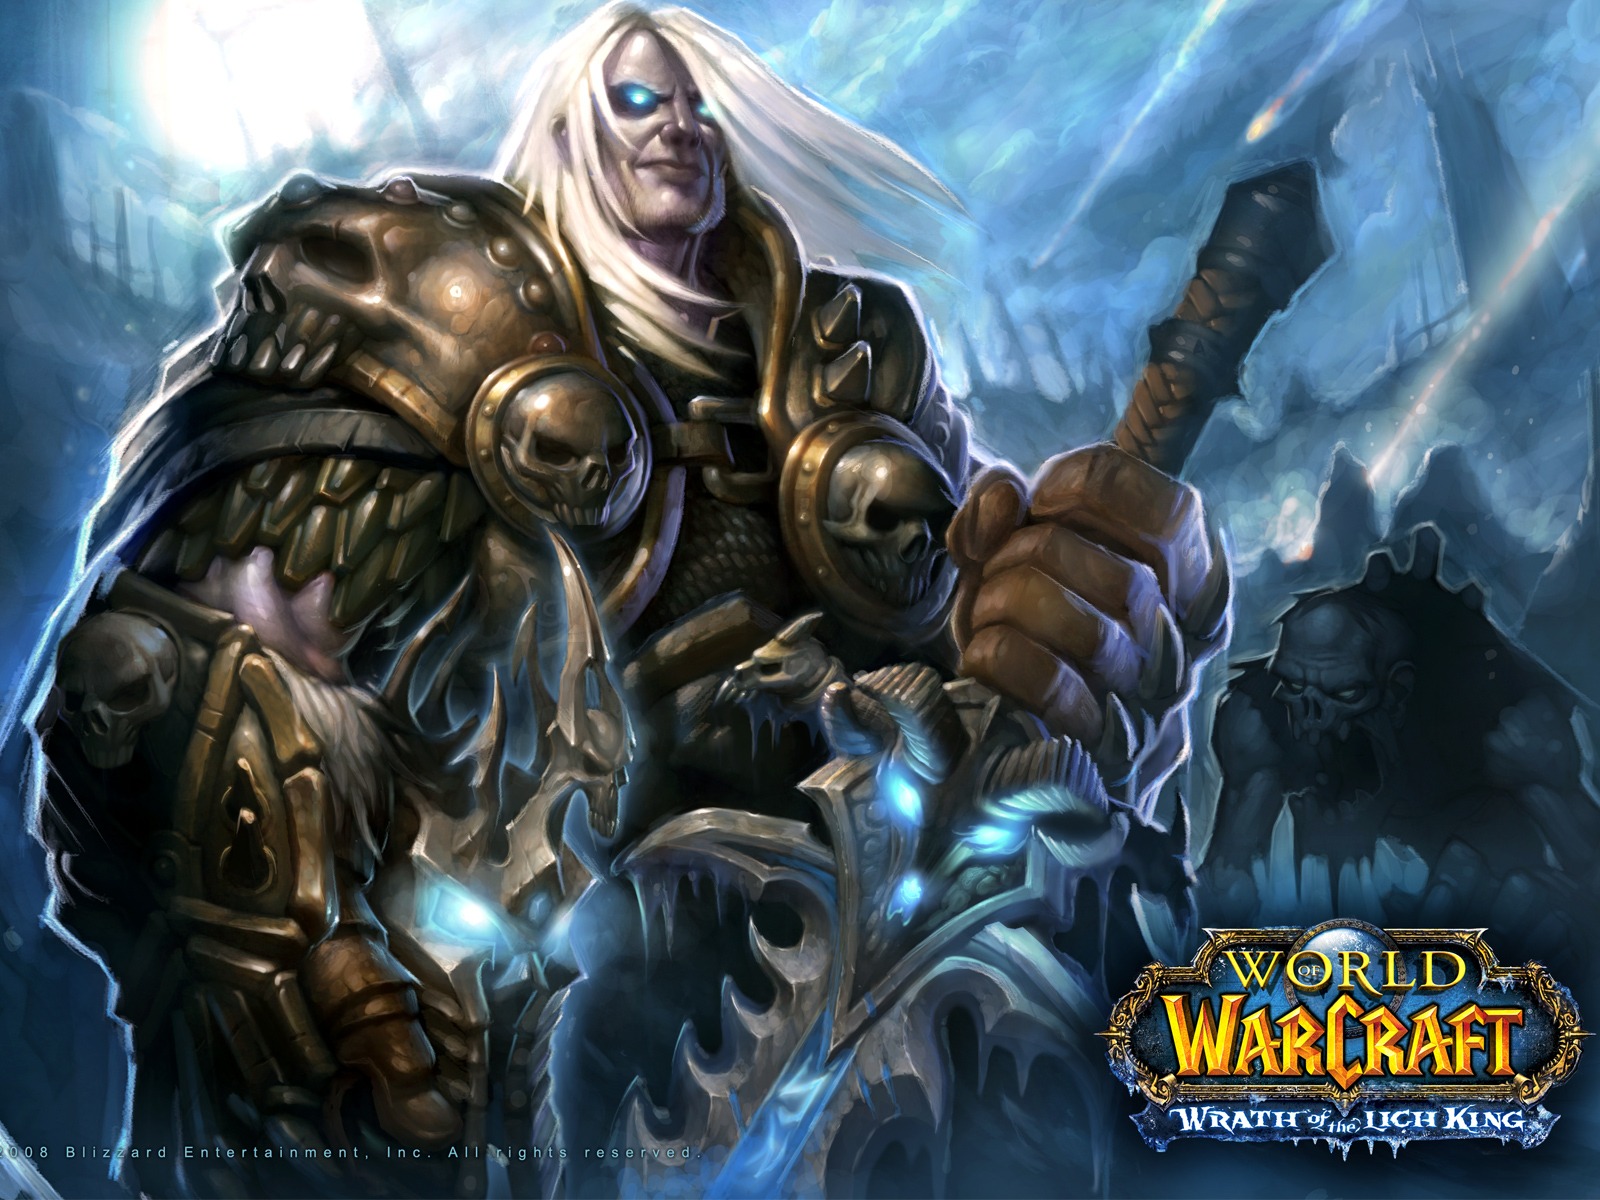 World of Warcraft 魔獸世界高清壁紙(二) #1 - 1600x1200